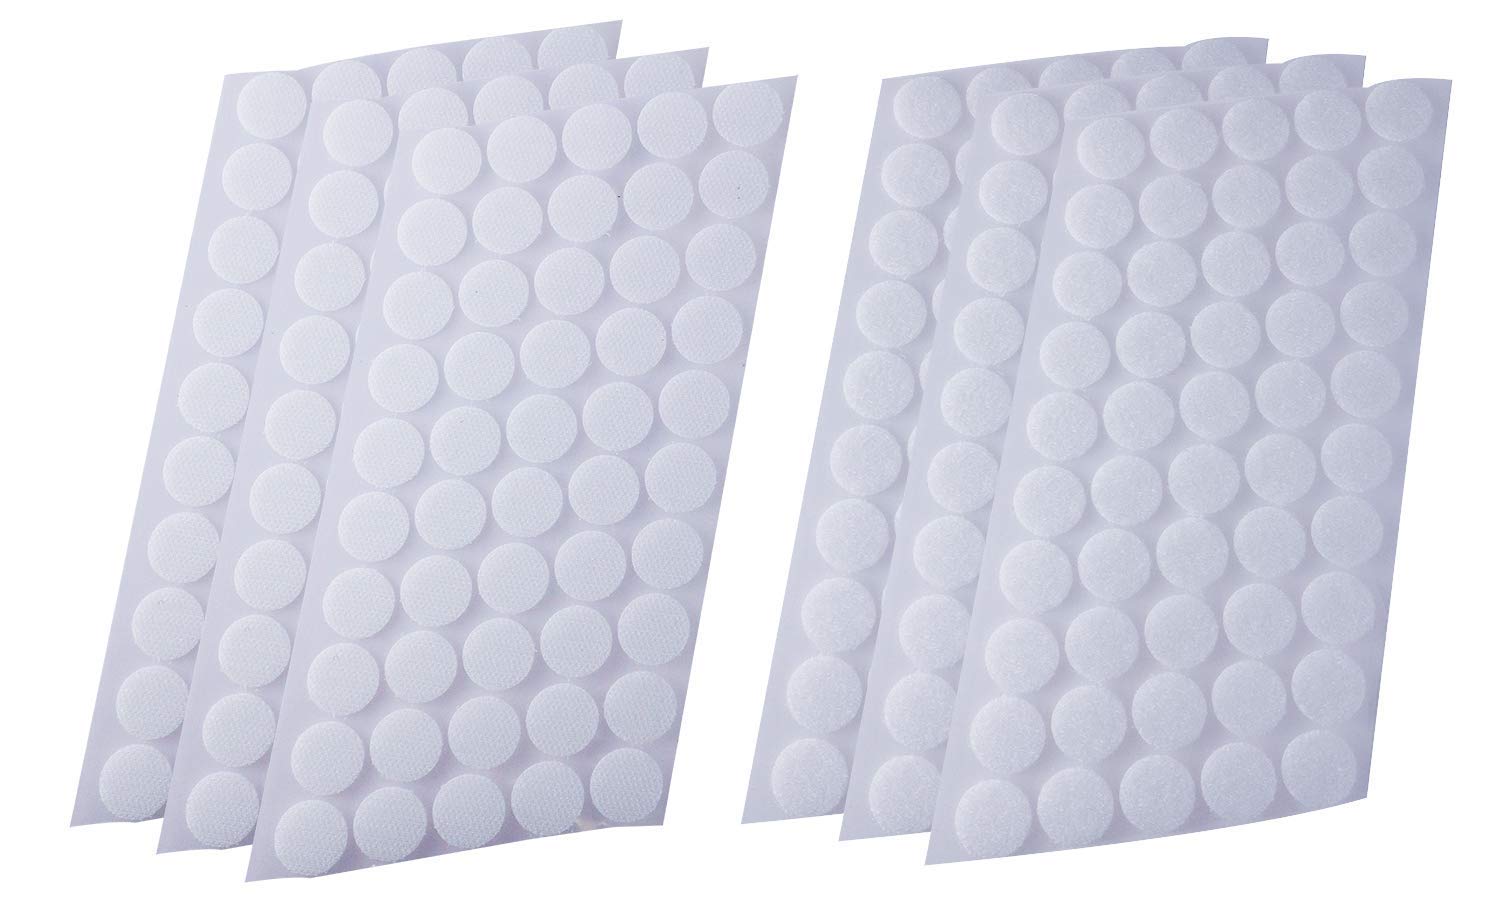 Unique Self Adhesive White Velcro Dots